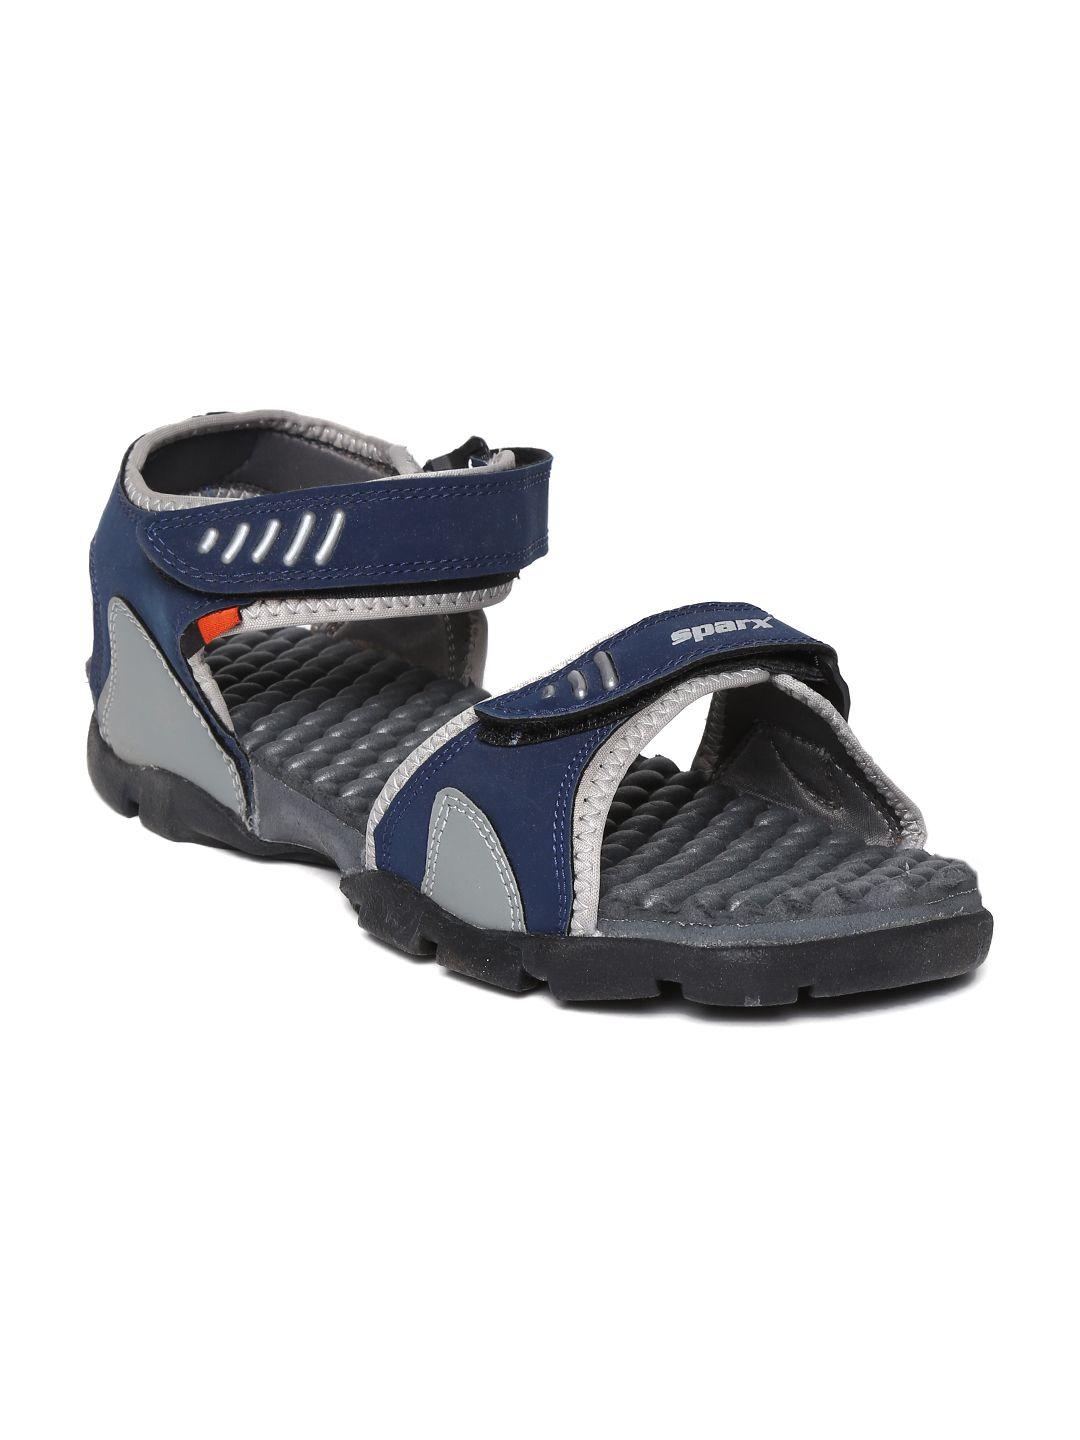 Sparx Men Navy & Grey Sports Sandals